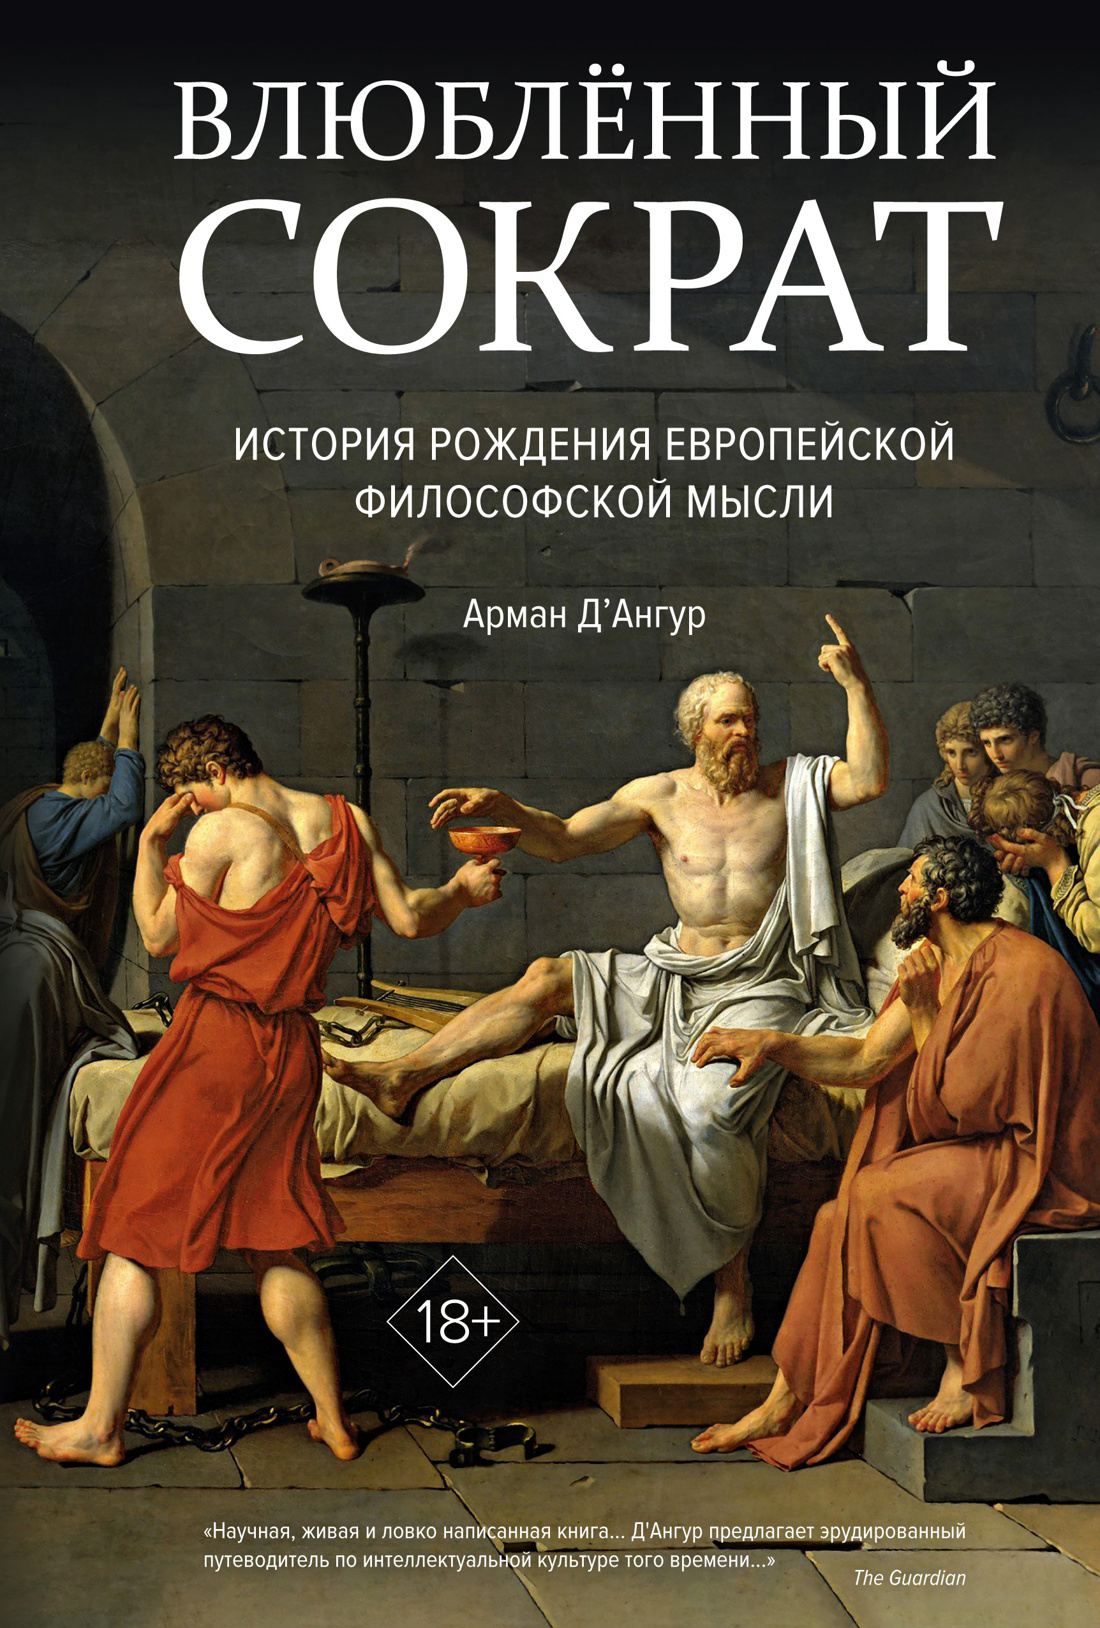 Влюбленный Сократ. История рождения европейской философской мысли лужков ю сократ всегда сократ и другие произведения